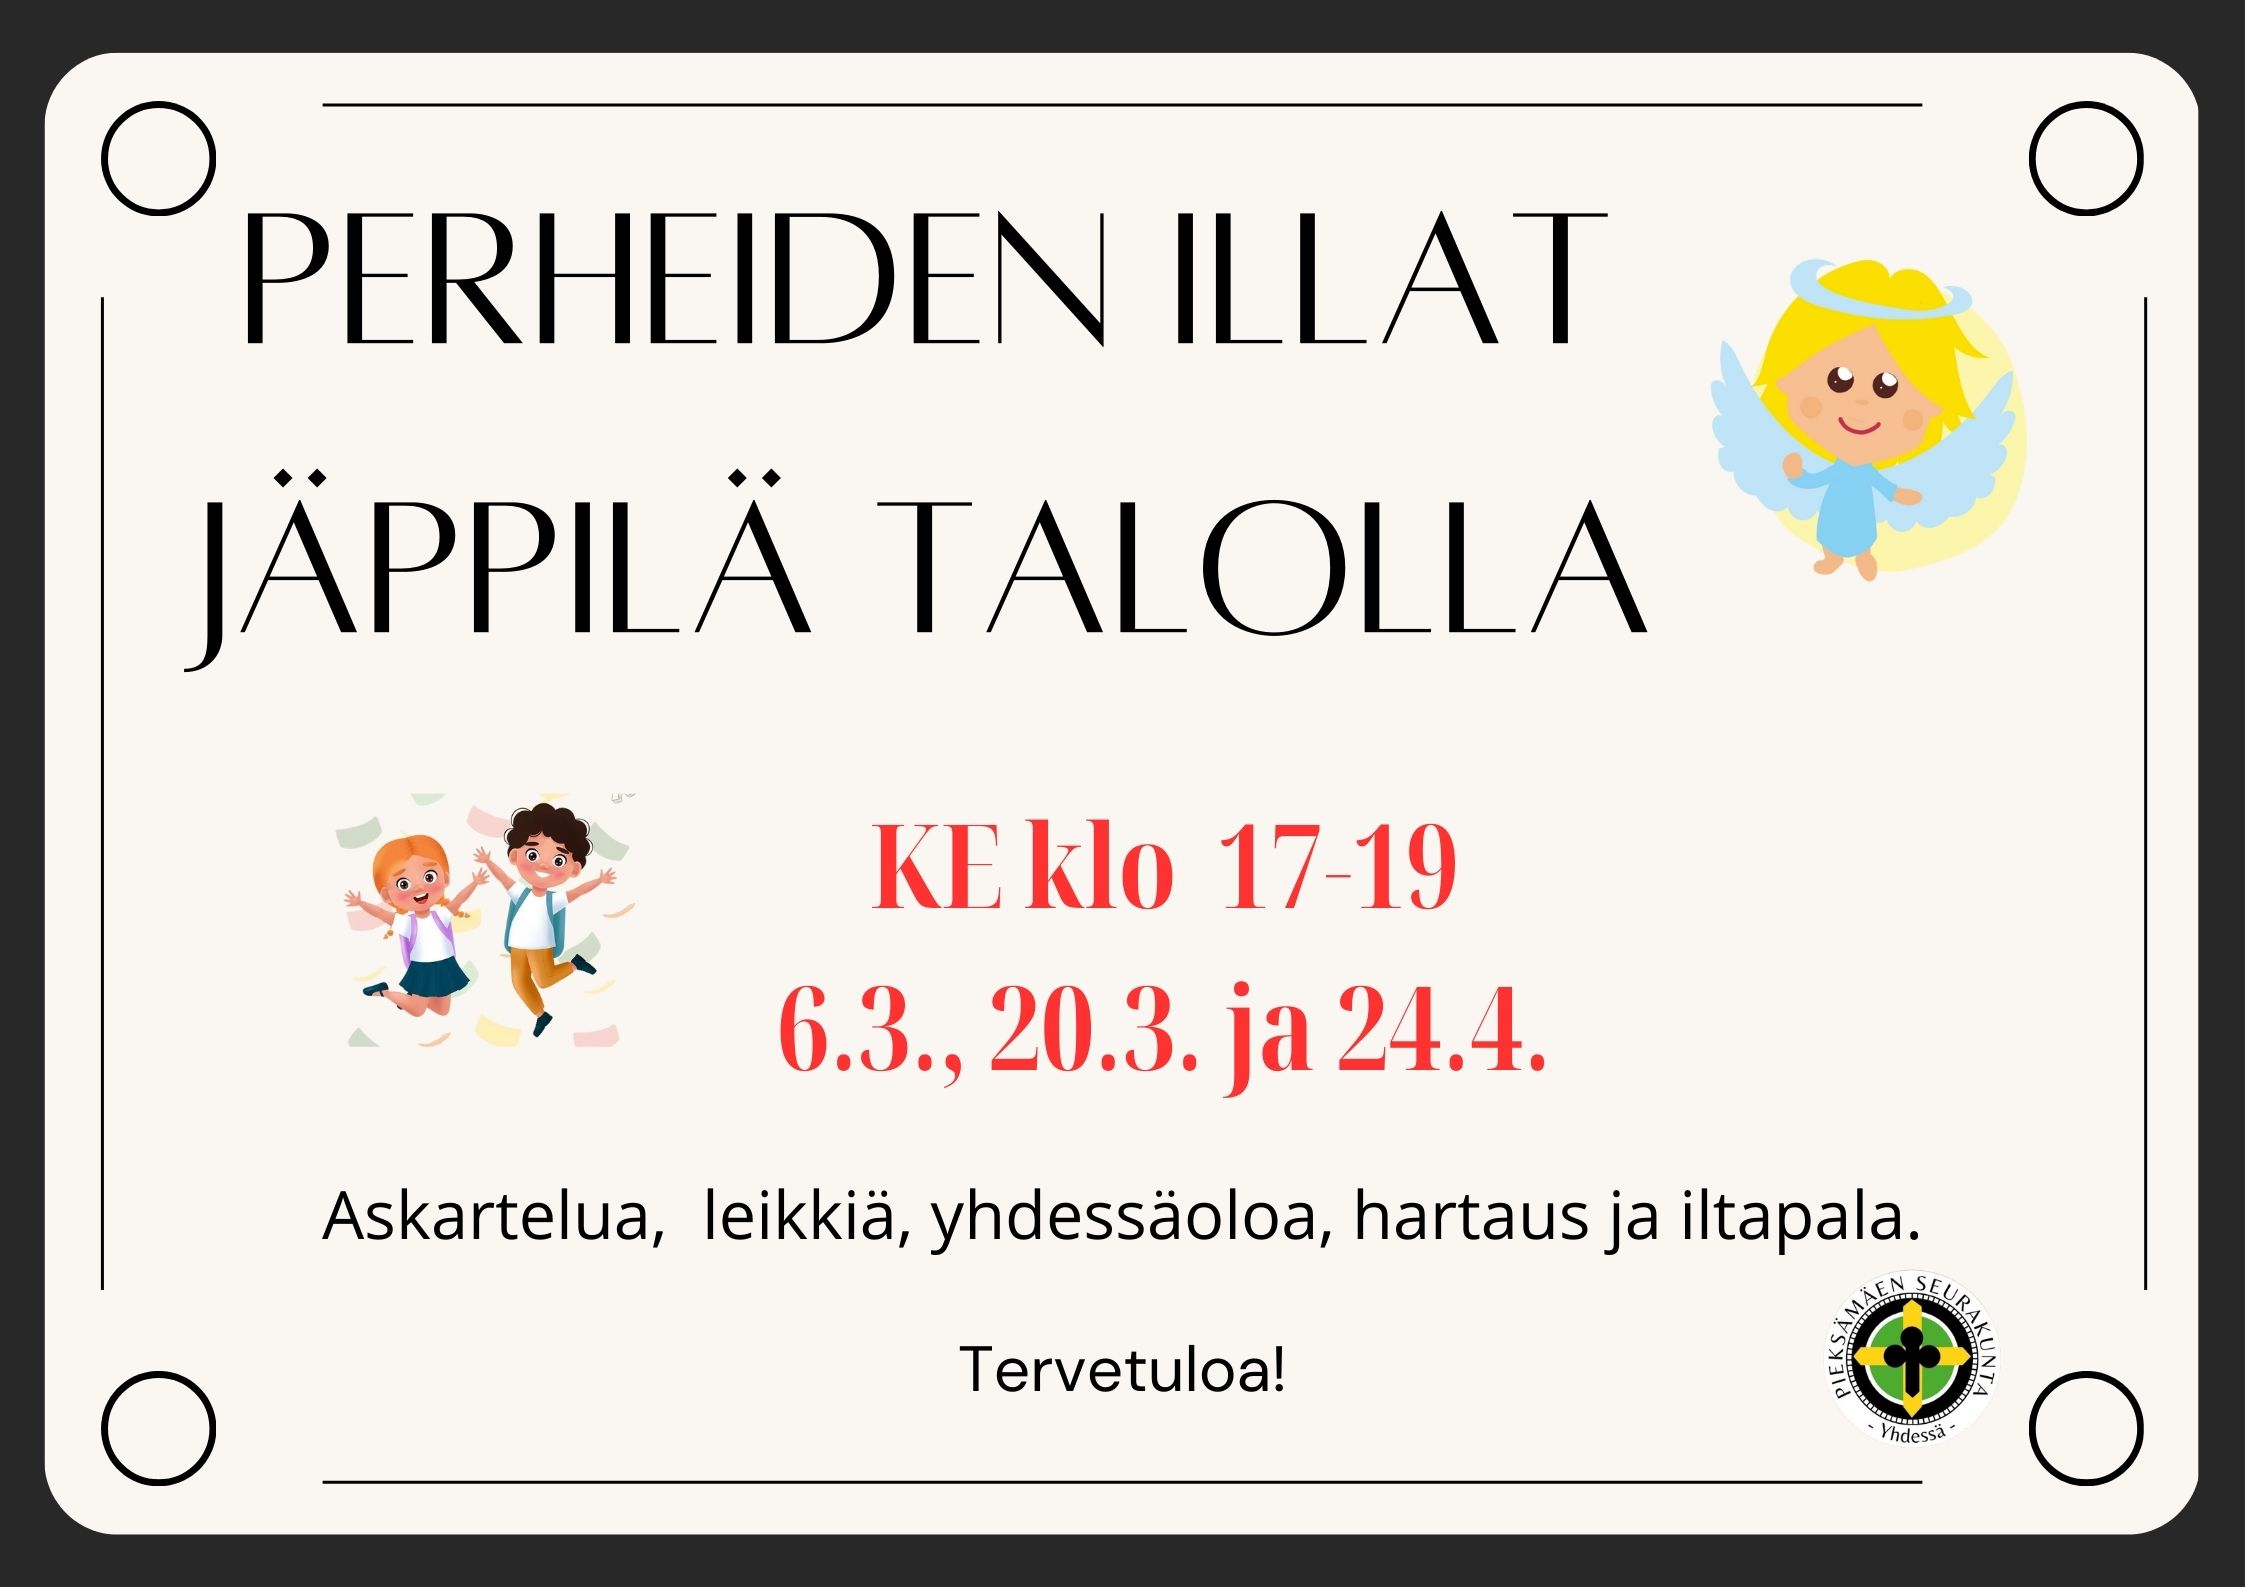 Perheiden iltoja Jäppilä talolla 6.3., 20.3. ja 24.4.